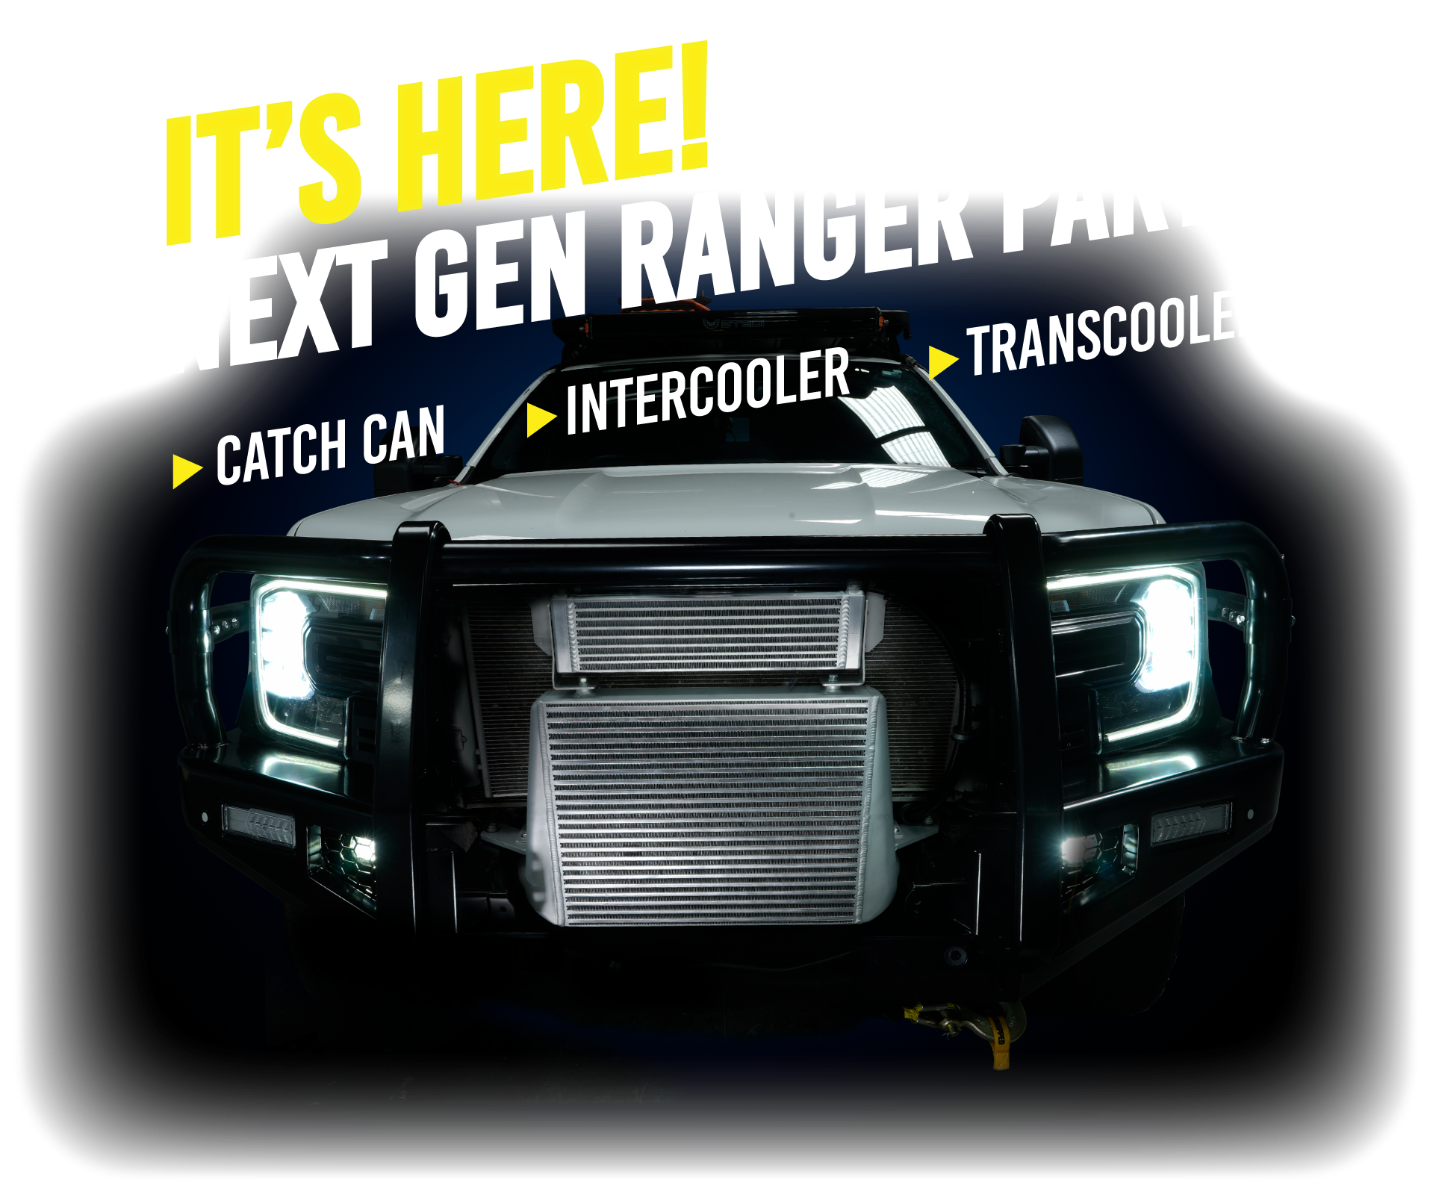 Ford Ranger Next Gen 3 litre V6 Diesel catch can intercooler transmission cooler